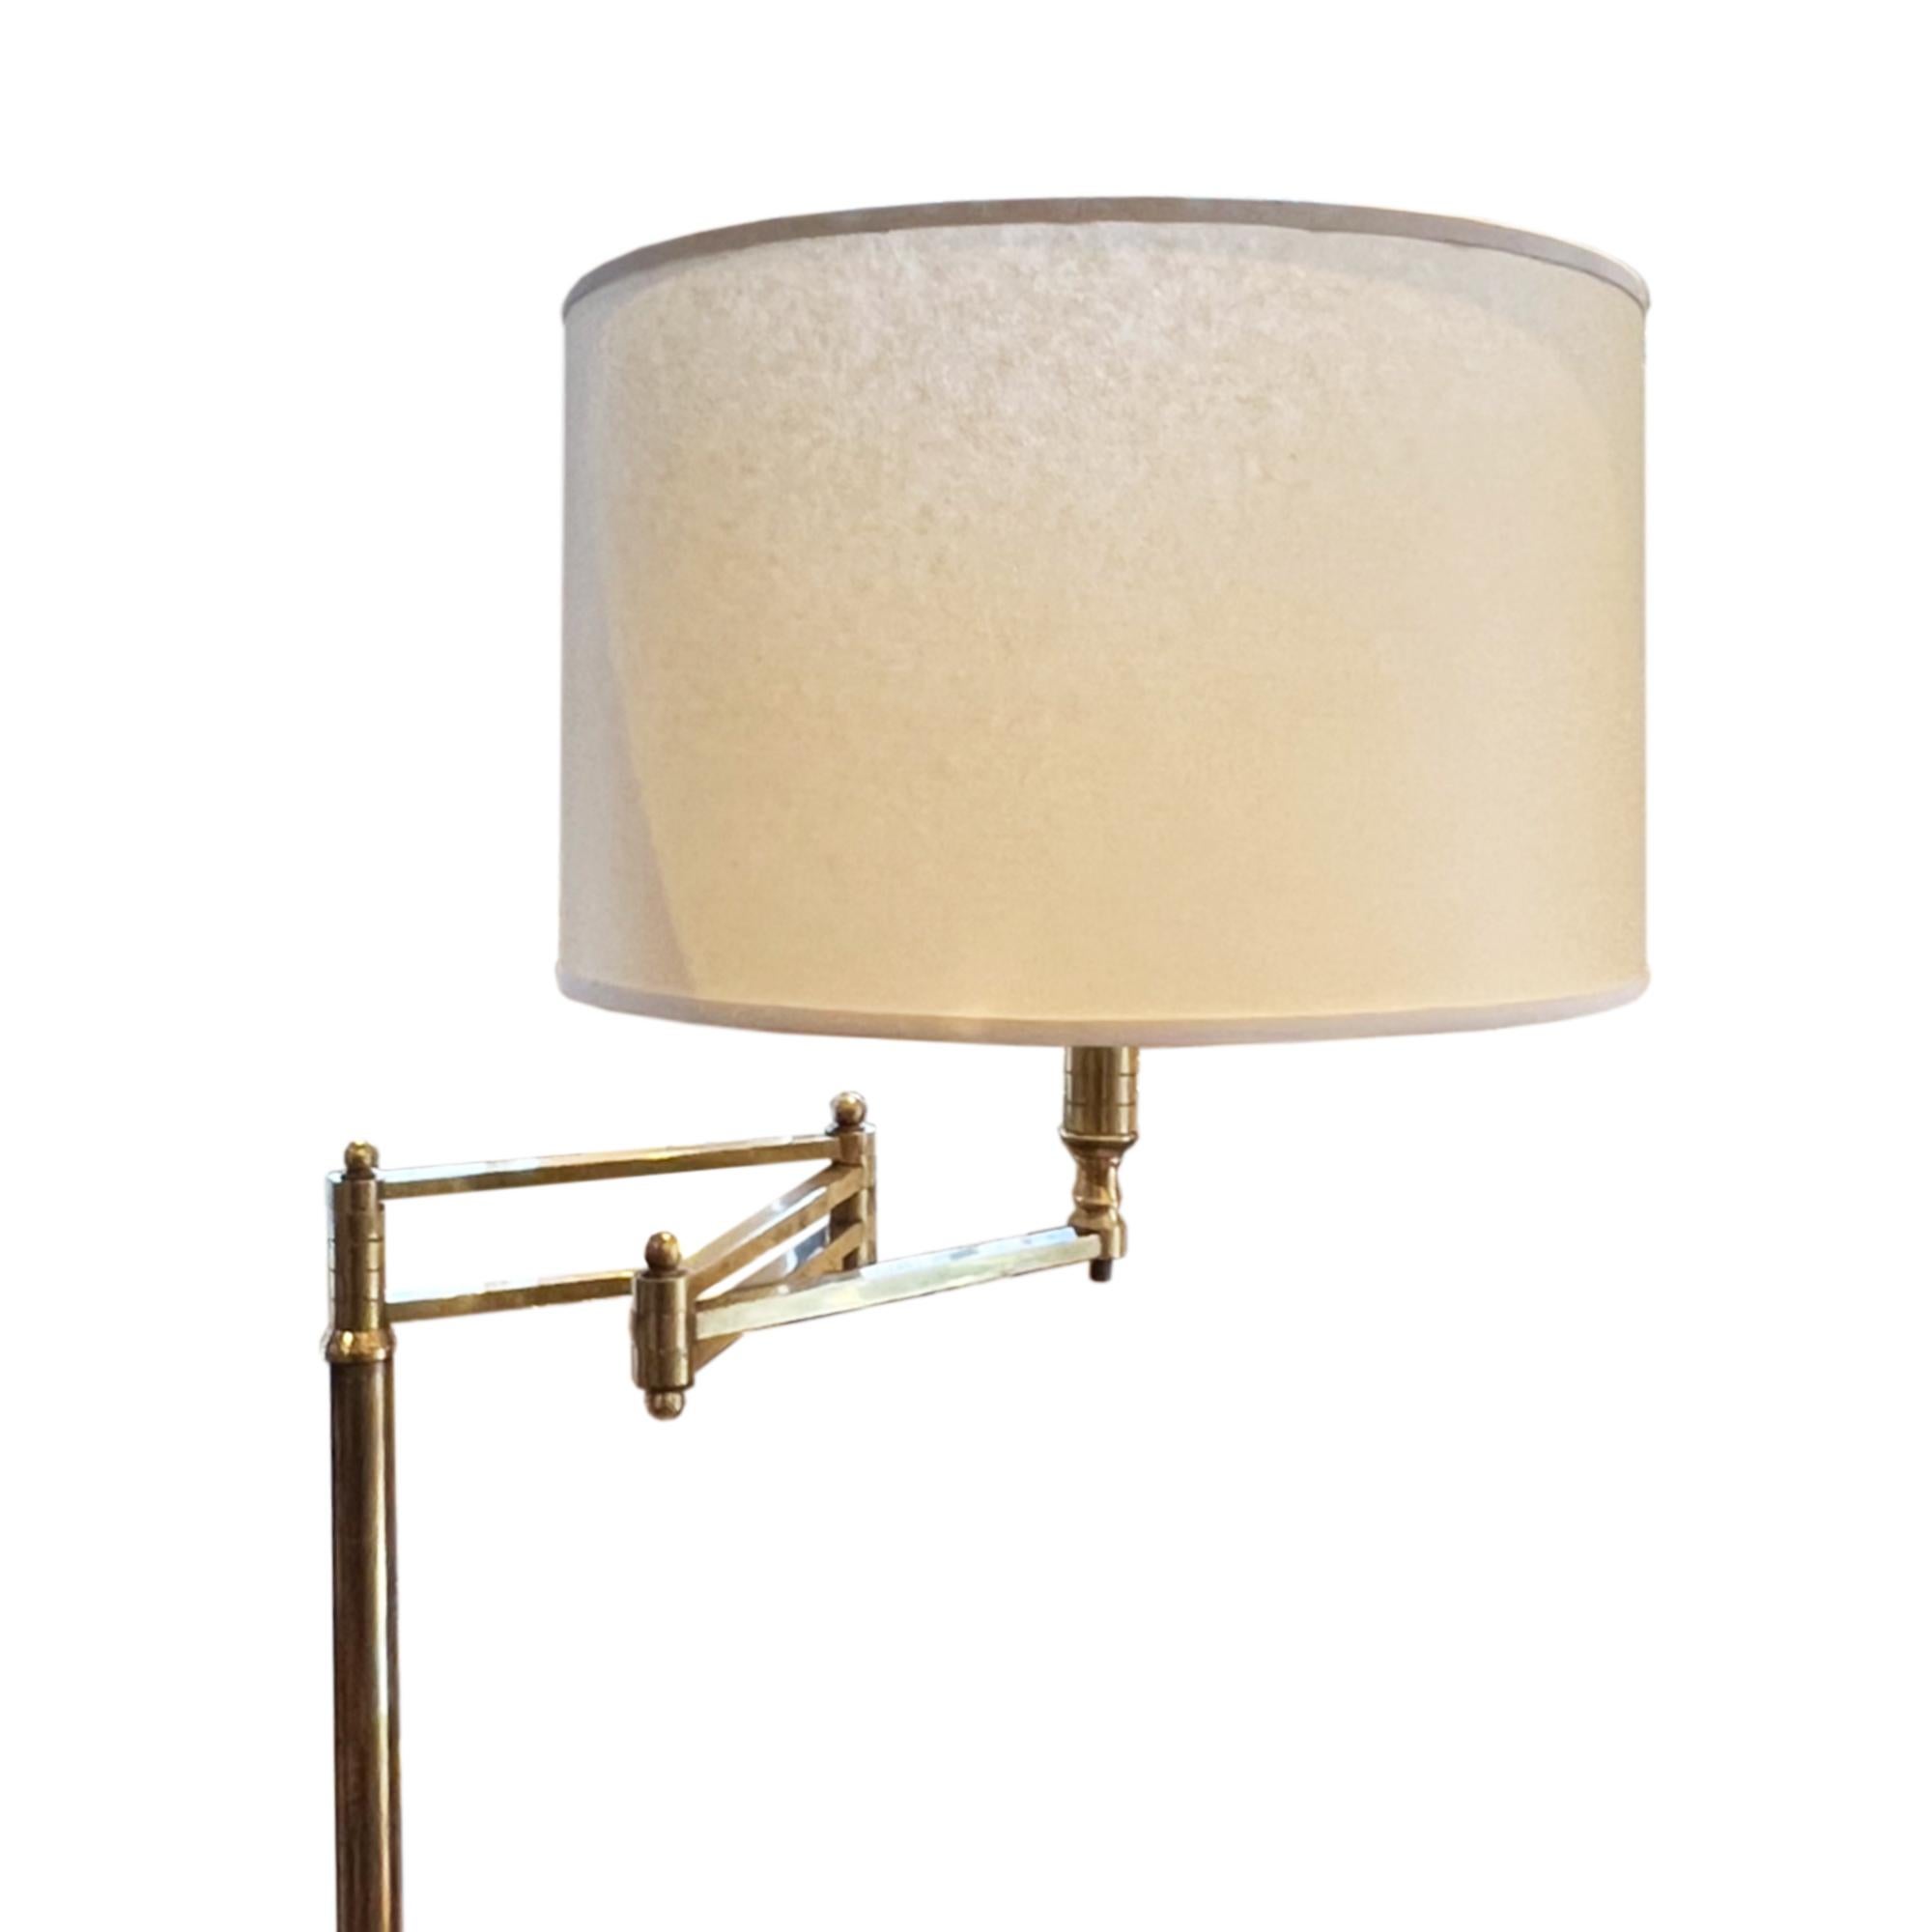 Ce lampadaire a été fabriqué en France dans les années 1960 et est entièrement ajustable, veuillez regarder toutes nos photos.

D'un design simple, ce luminaire est fabriqué en laiton avec une base solide en marbre blanc. Cela lui permet de rester